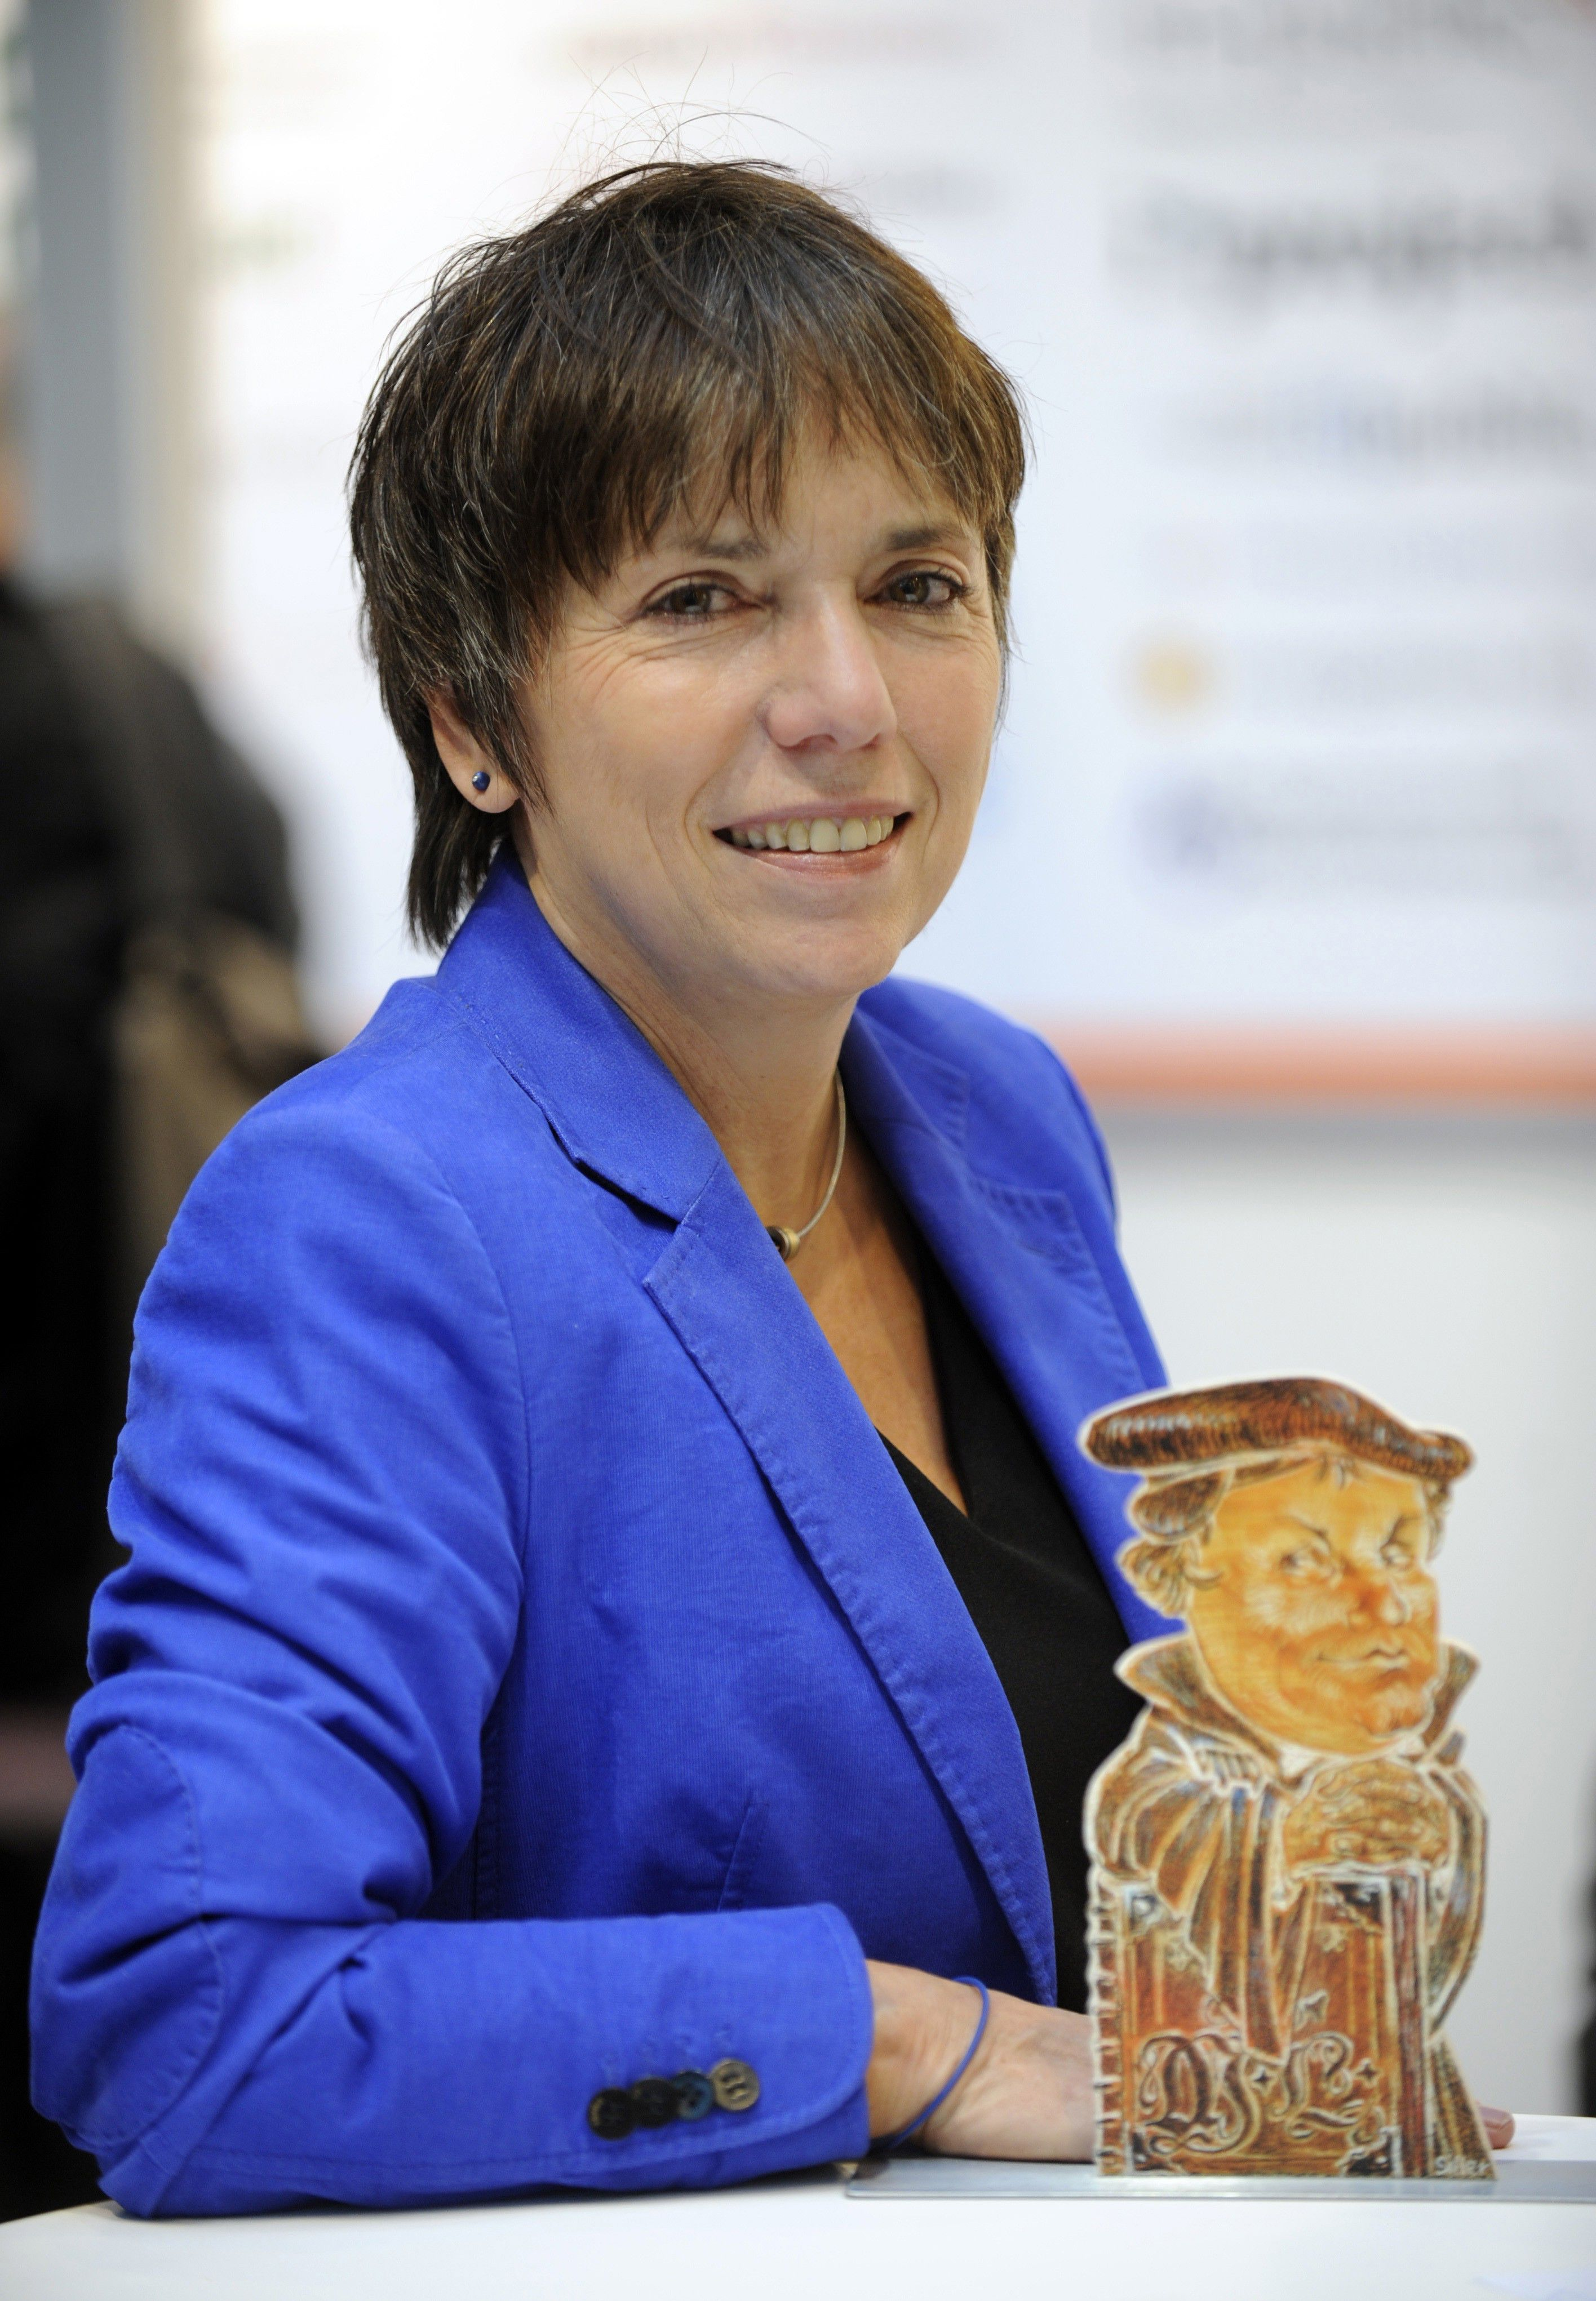 Margot Käßmann, evangelische Theologin, Botschafterin für das Reformationsjubiläum 2017 Die Zuwanderung und das Reformationsjahr 2017 Europa, deine Flüchtlinge.